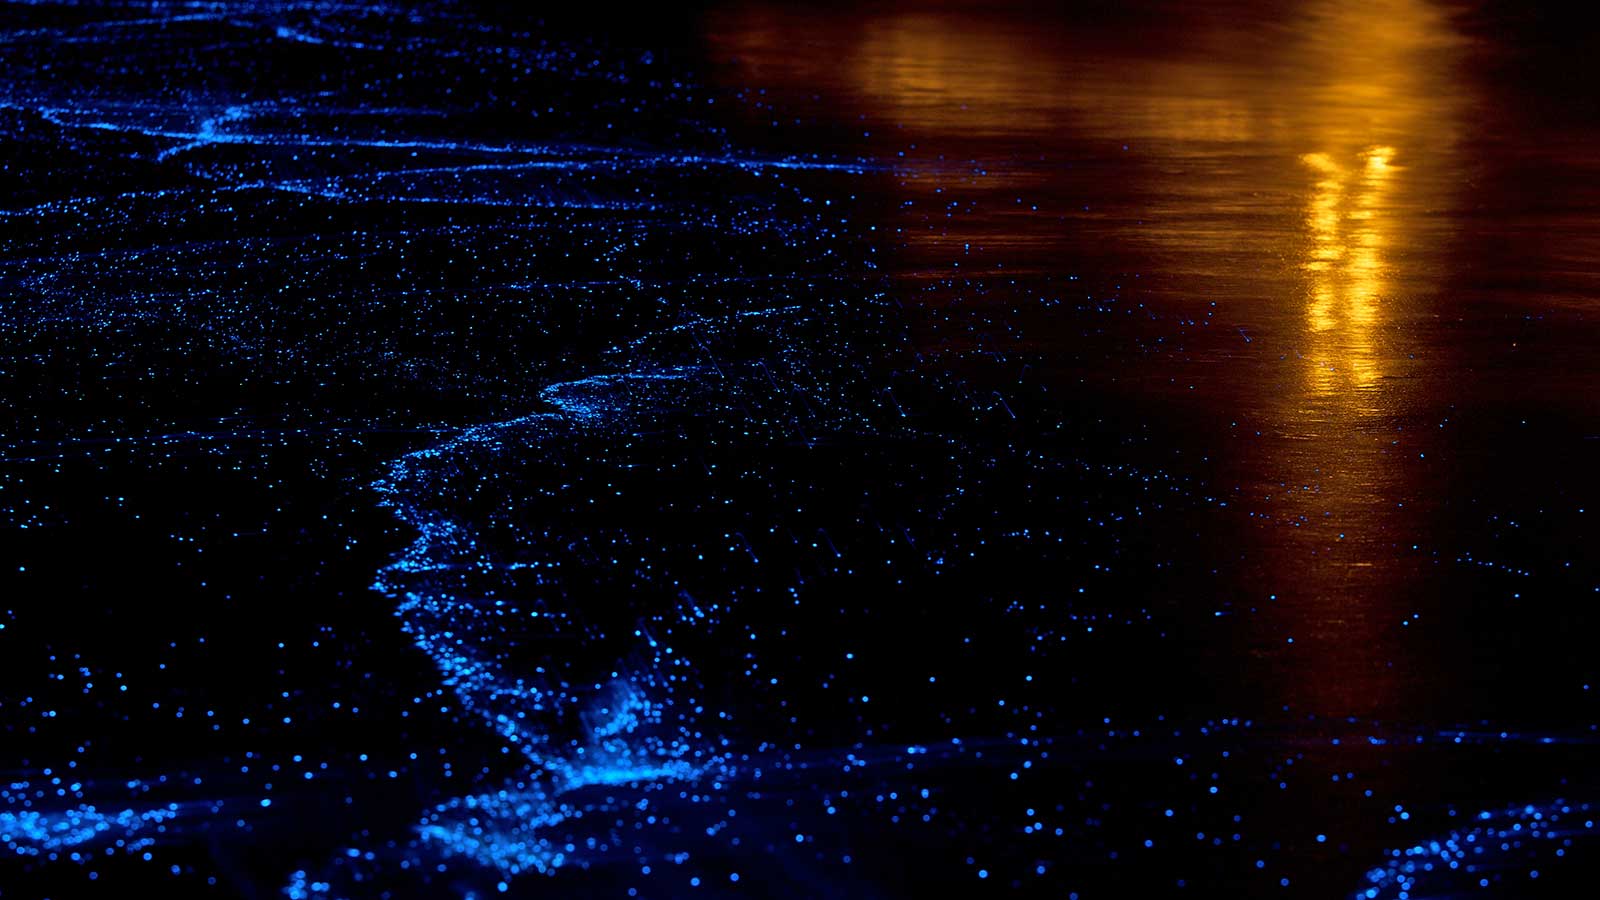 Bioluminescent Plankton - Beautiful Maldives At Night , HD Wallpaper & Backgrounds